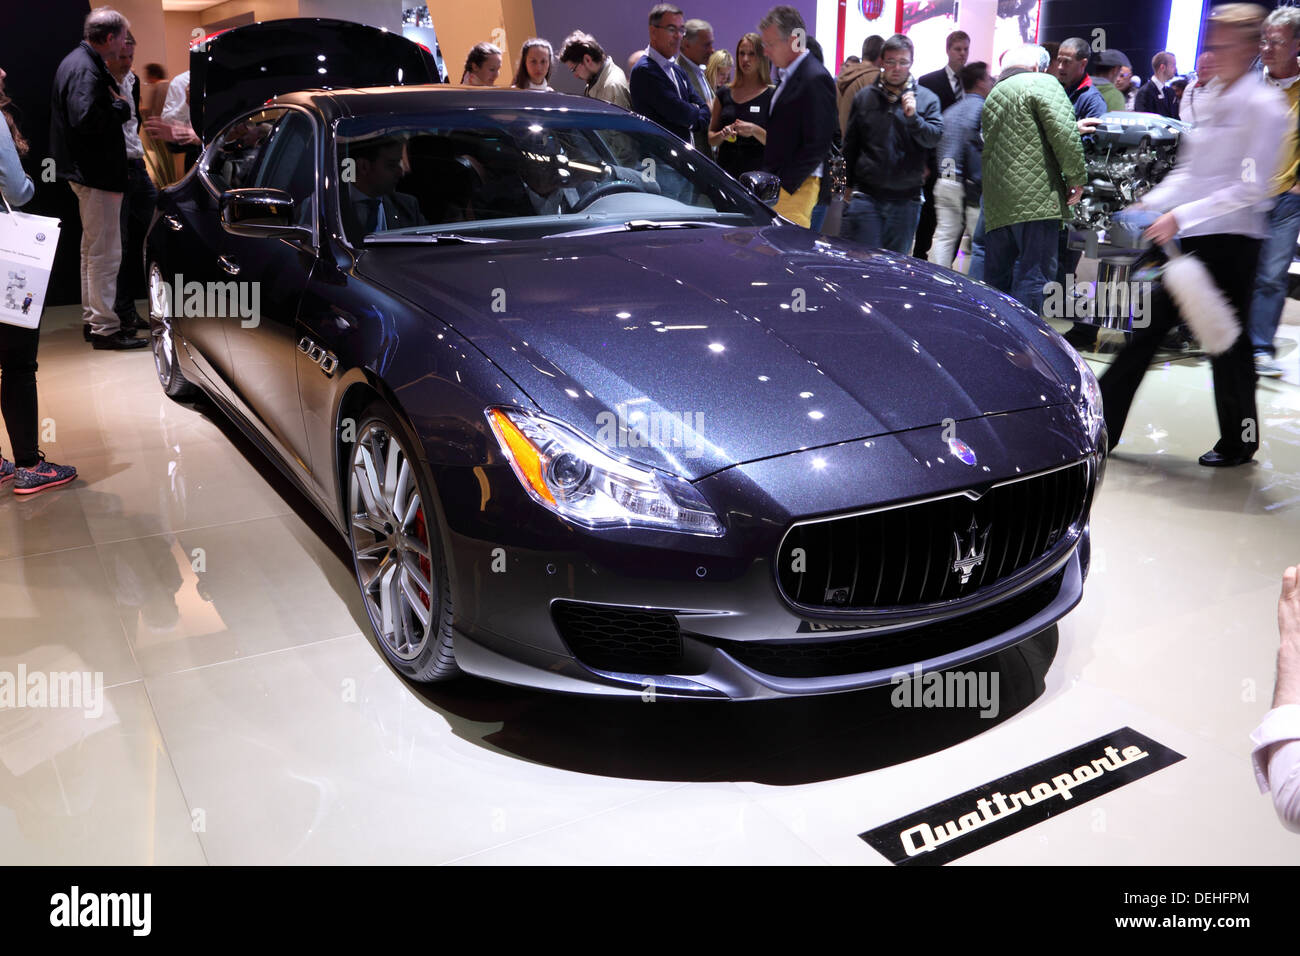 International Motor Show de Francfort, en Allemagne. Présentant la nouvelle Maserati Quattroporte à la 65ème IAA de Francfort, Allemagne Banque D'Images